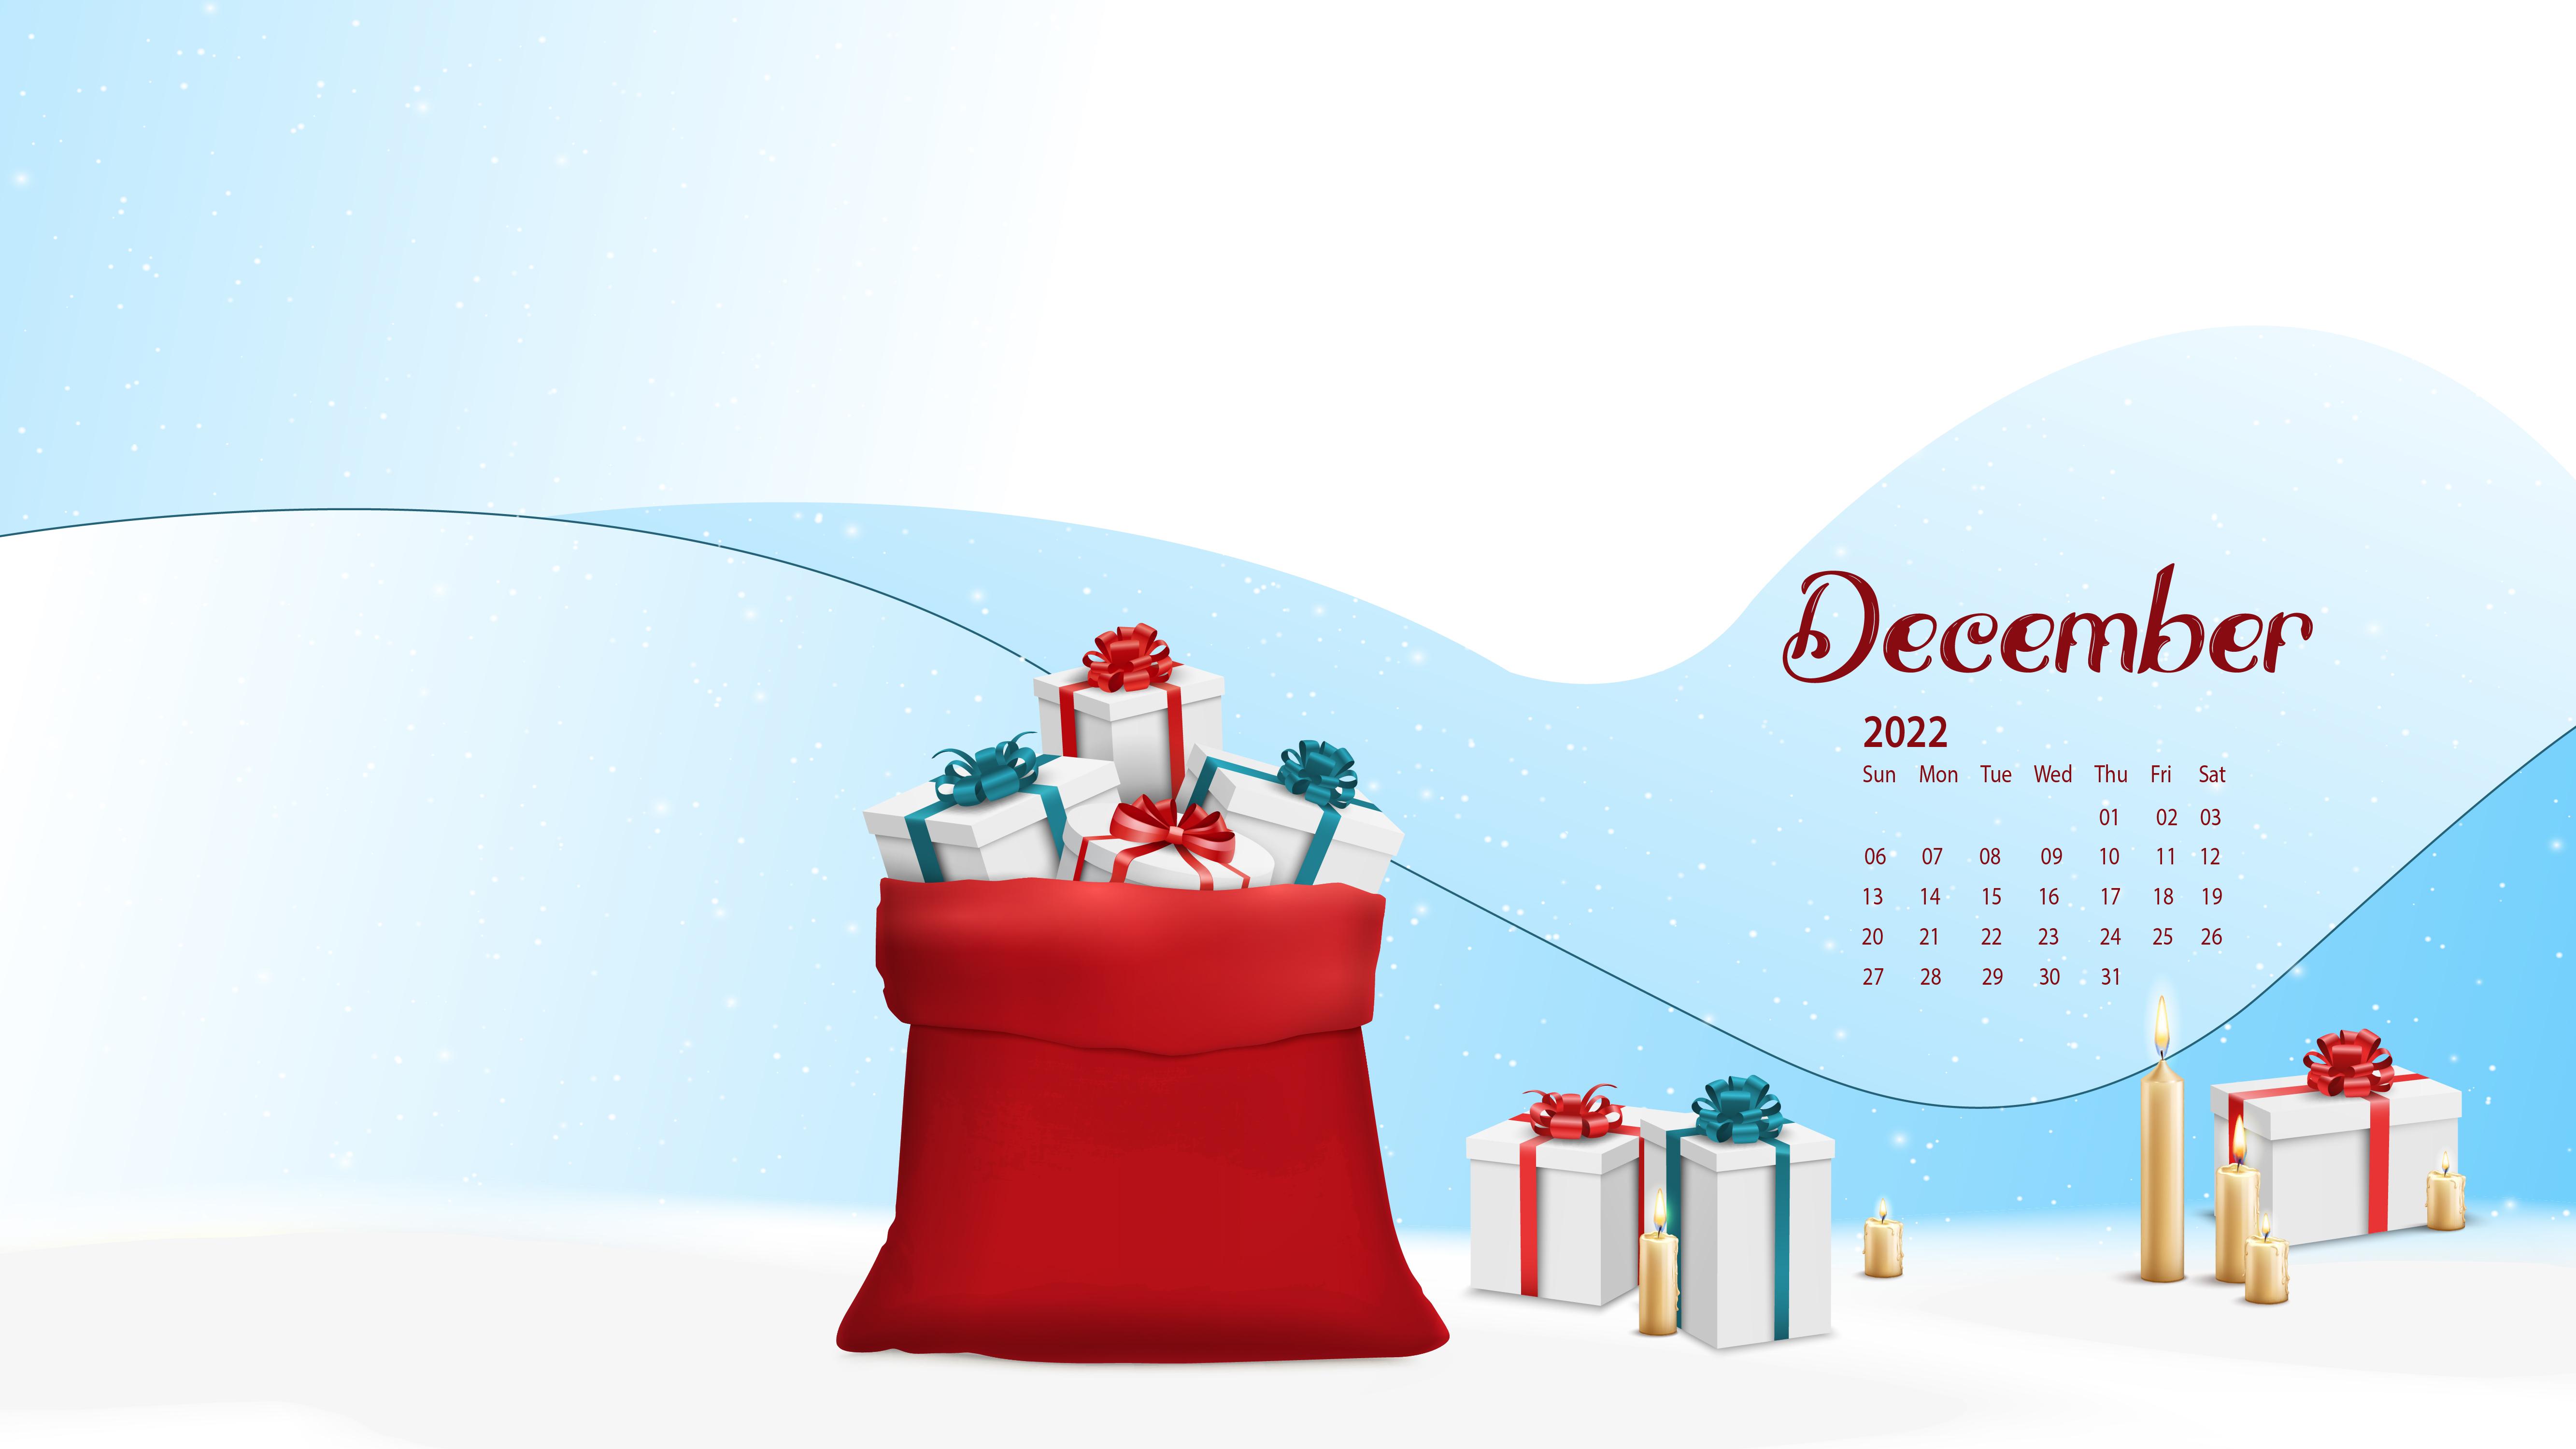 December 2022 Desktop Wallpaper Calendar   CalendarLabs